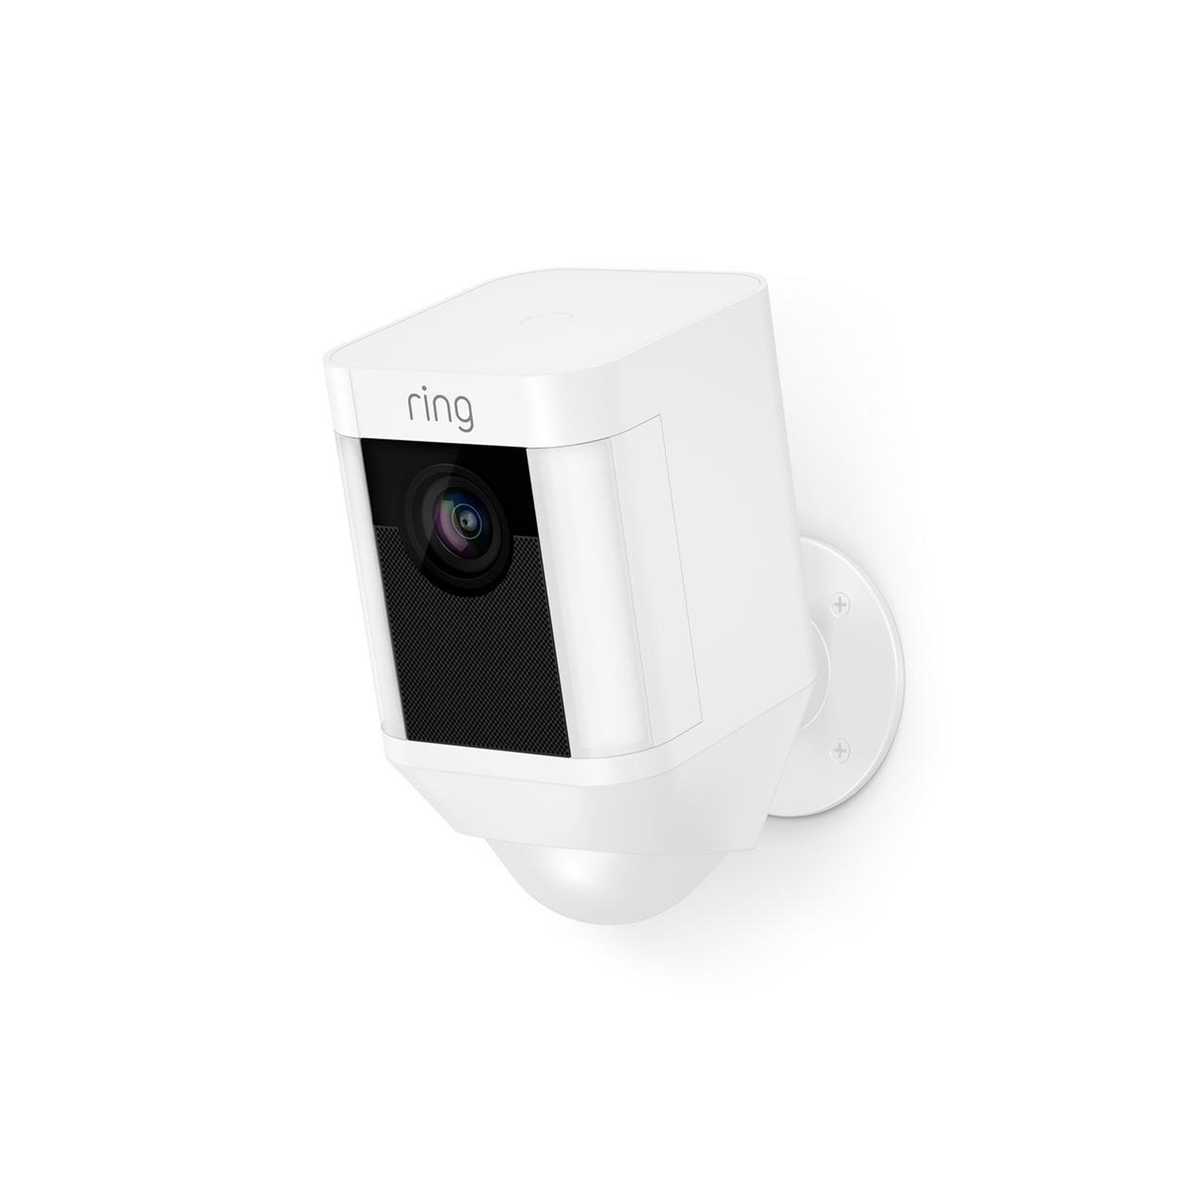 كاميرا Ring Spotlight Cam 1080p واي فاي خارجية مع رؤية ليلية، أبيض